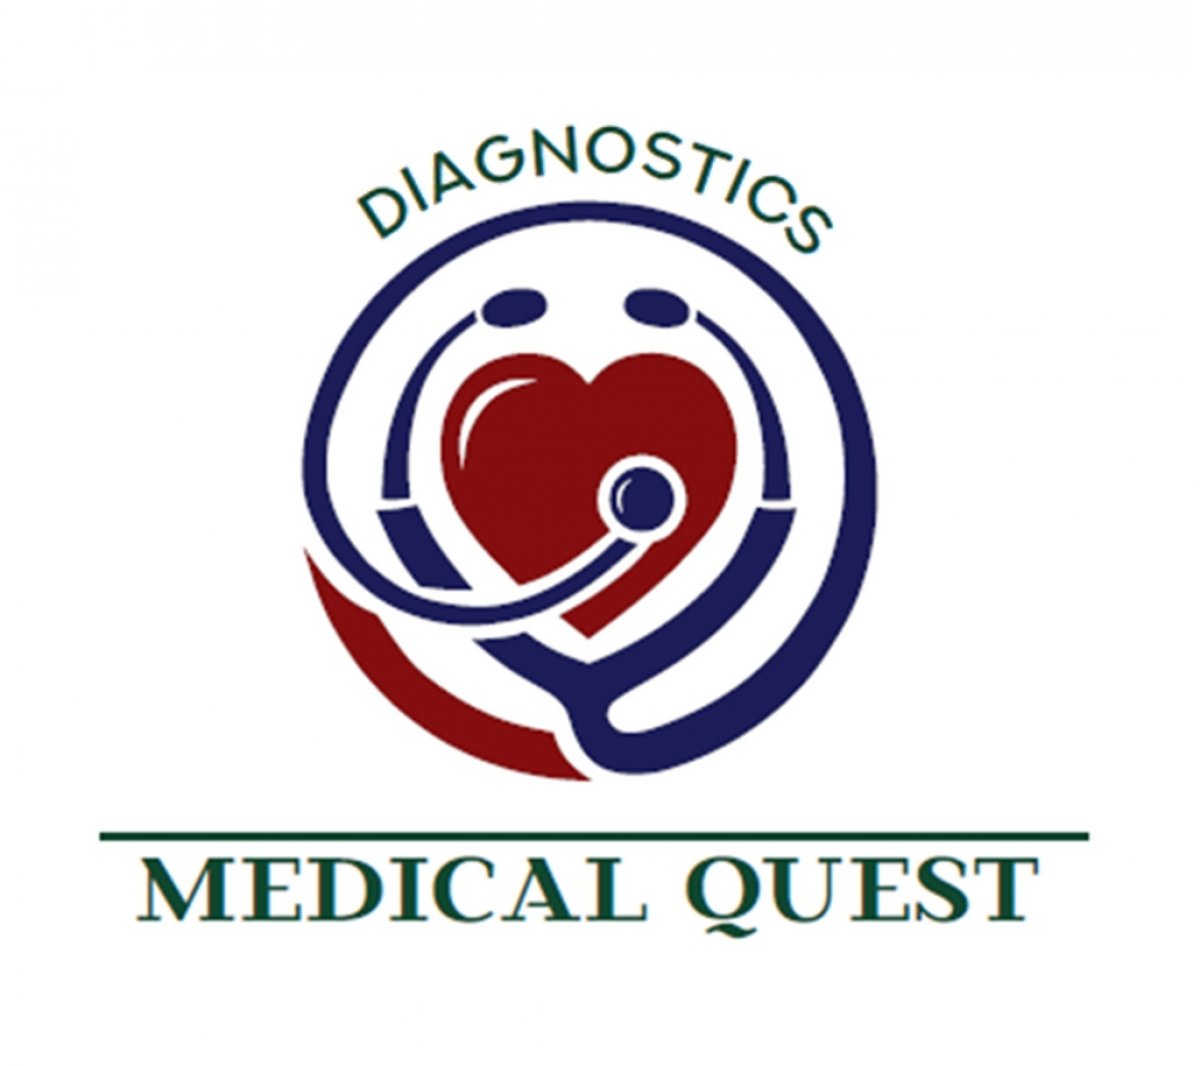 Приглашаем студентов вашего ВУЗа принять участие в Олимпиаде “Medical Quest Diagnostics”, которая состоится 19-20го апреля в г.Казани!